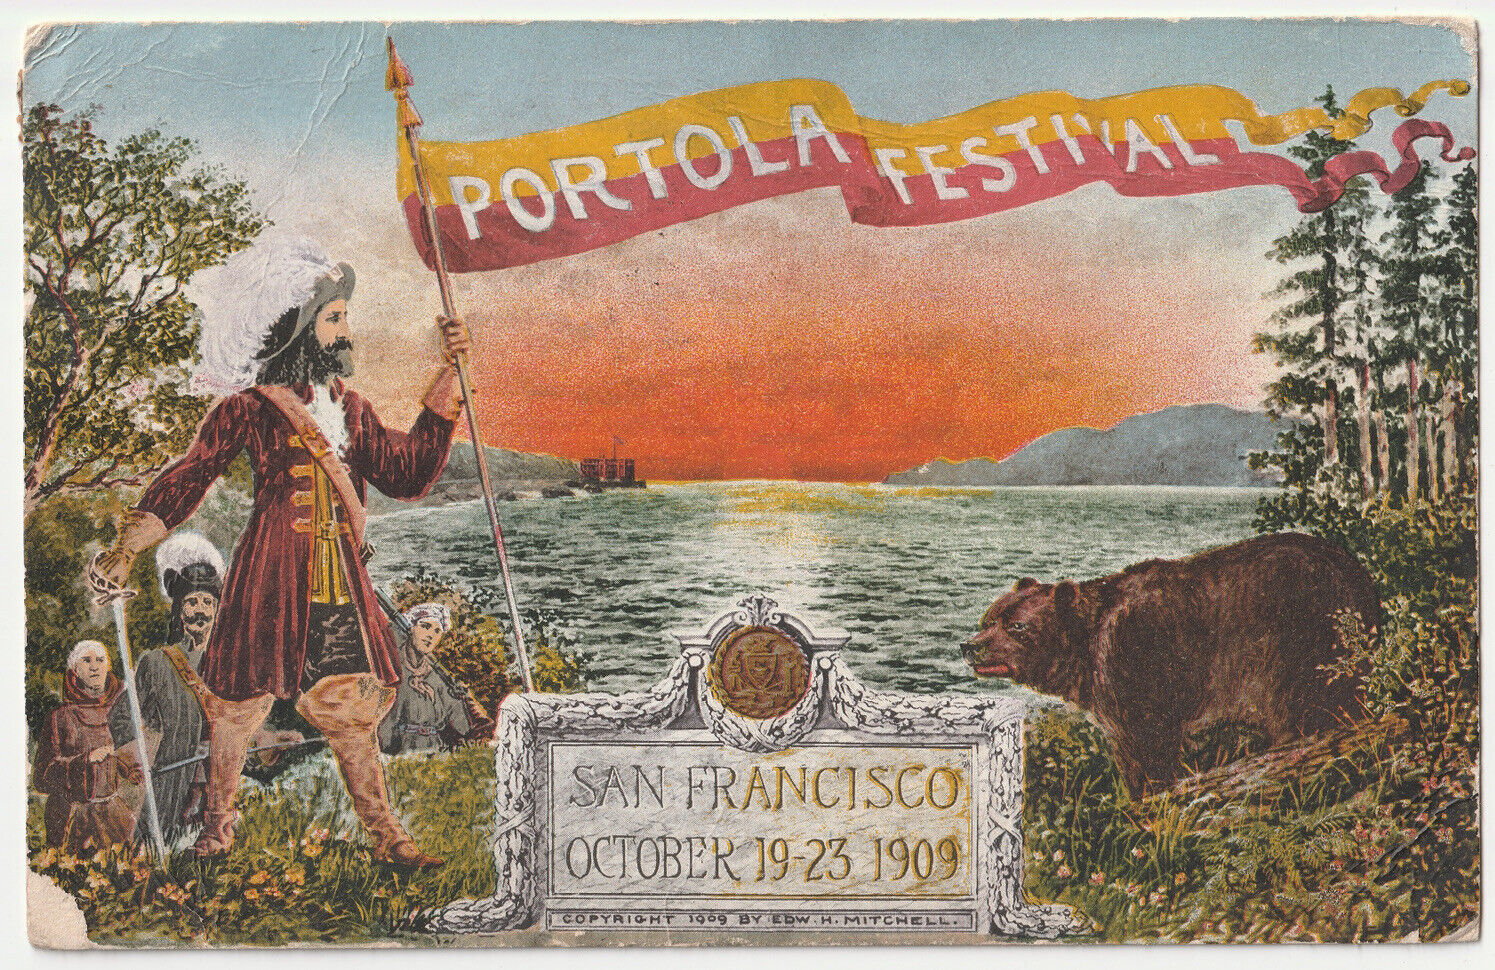 c1900s October 19 - 23 1909 Portola Festival San Francisco VTG CA OG Postcard